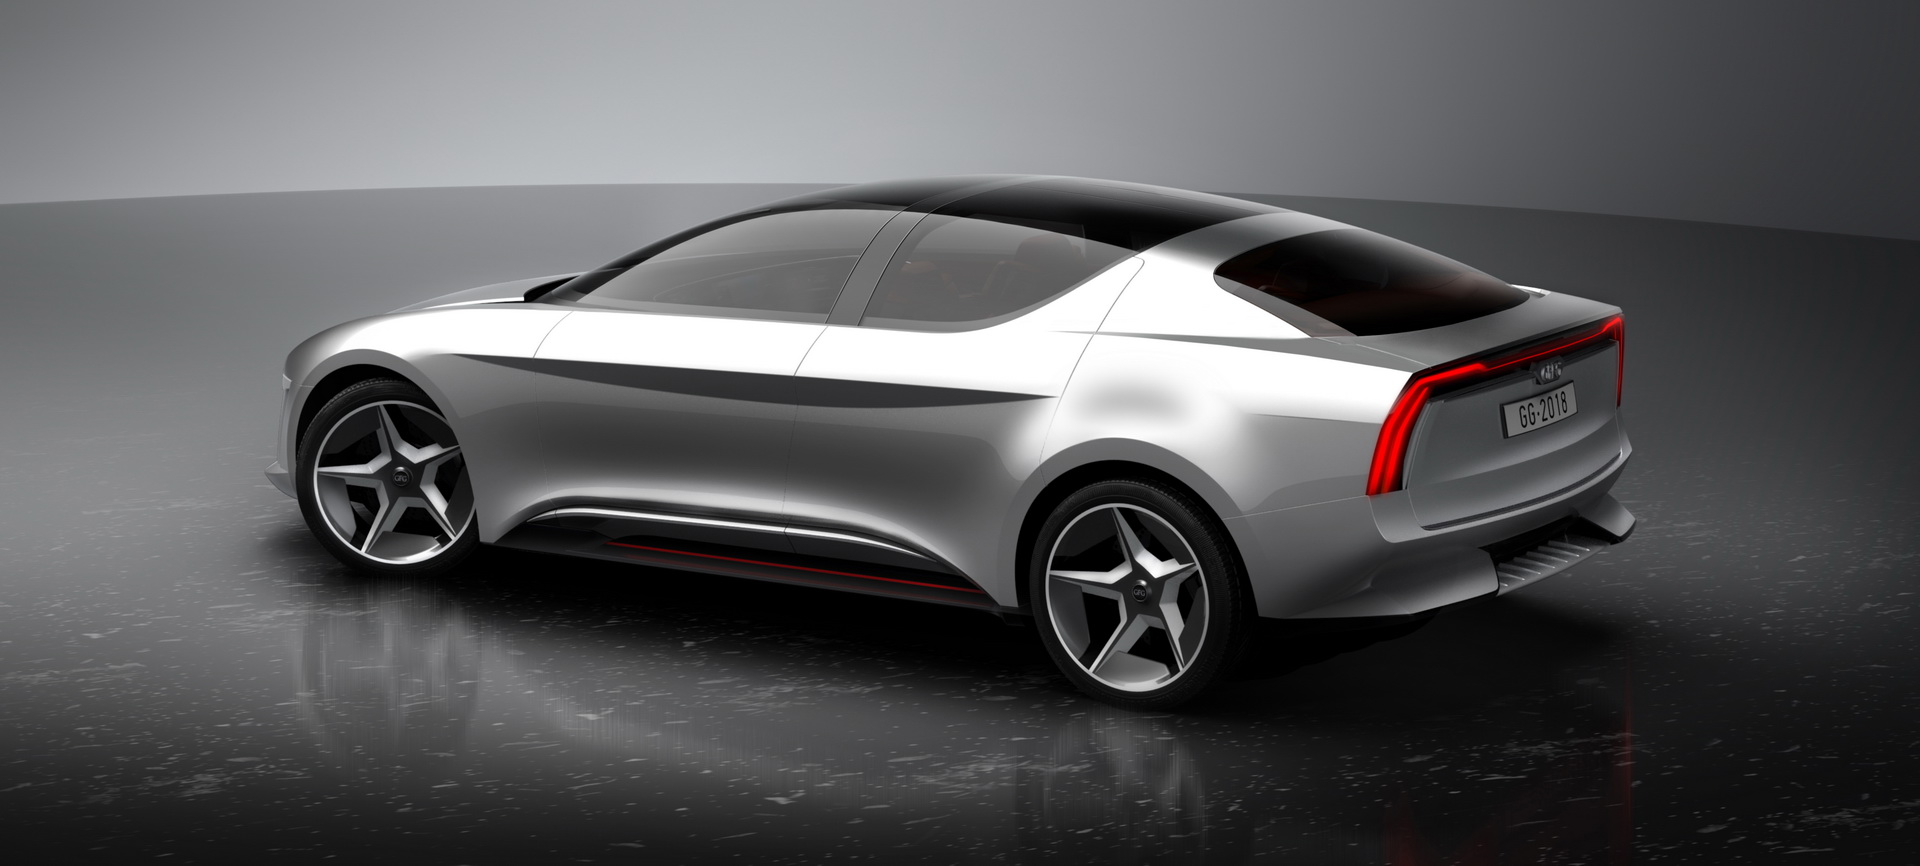 Geneva International Motor Show, gfg-style-sybilla-unveiled-geneva-3: GFG Sibylla EV Concept: Inovasi Terkini Pada Sebuah Mobil